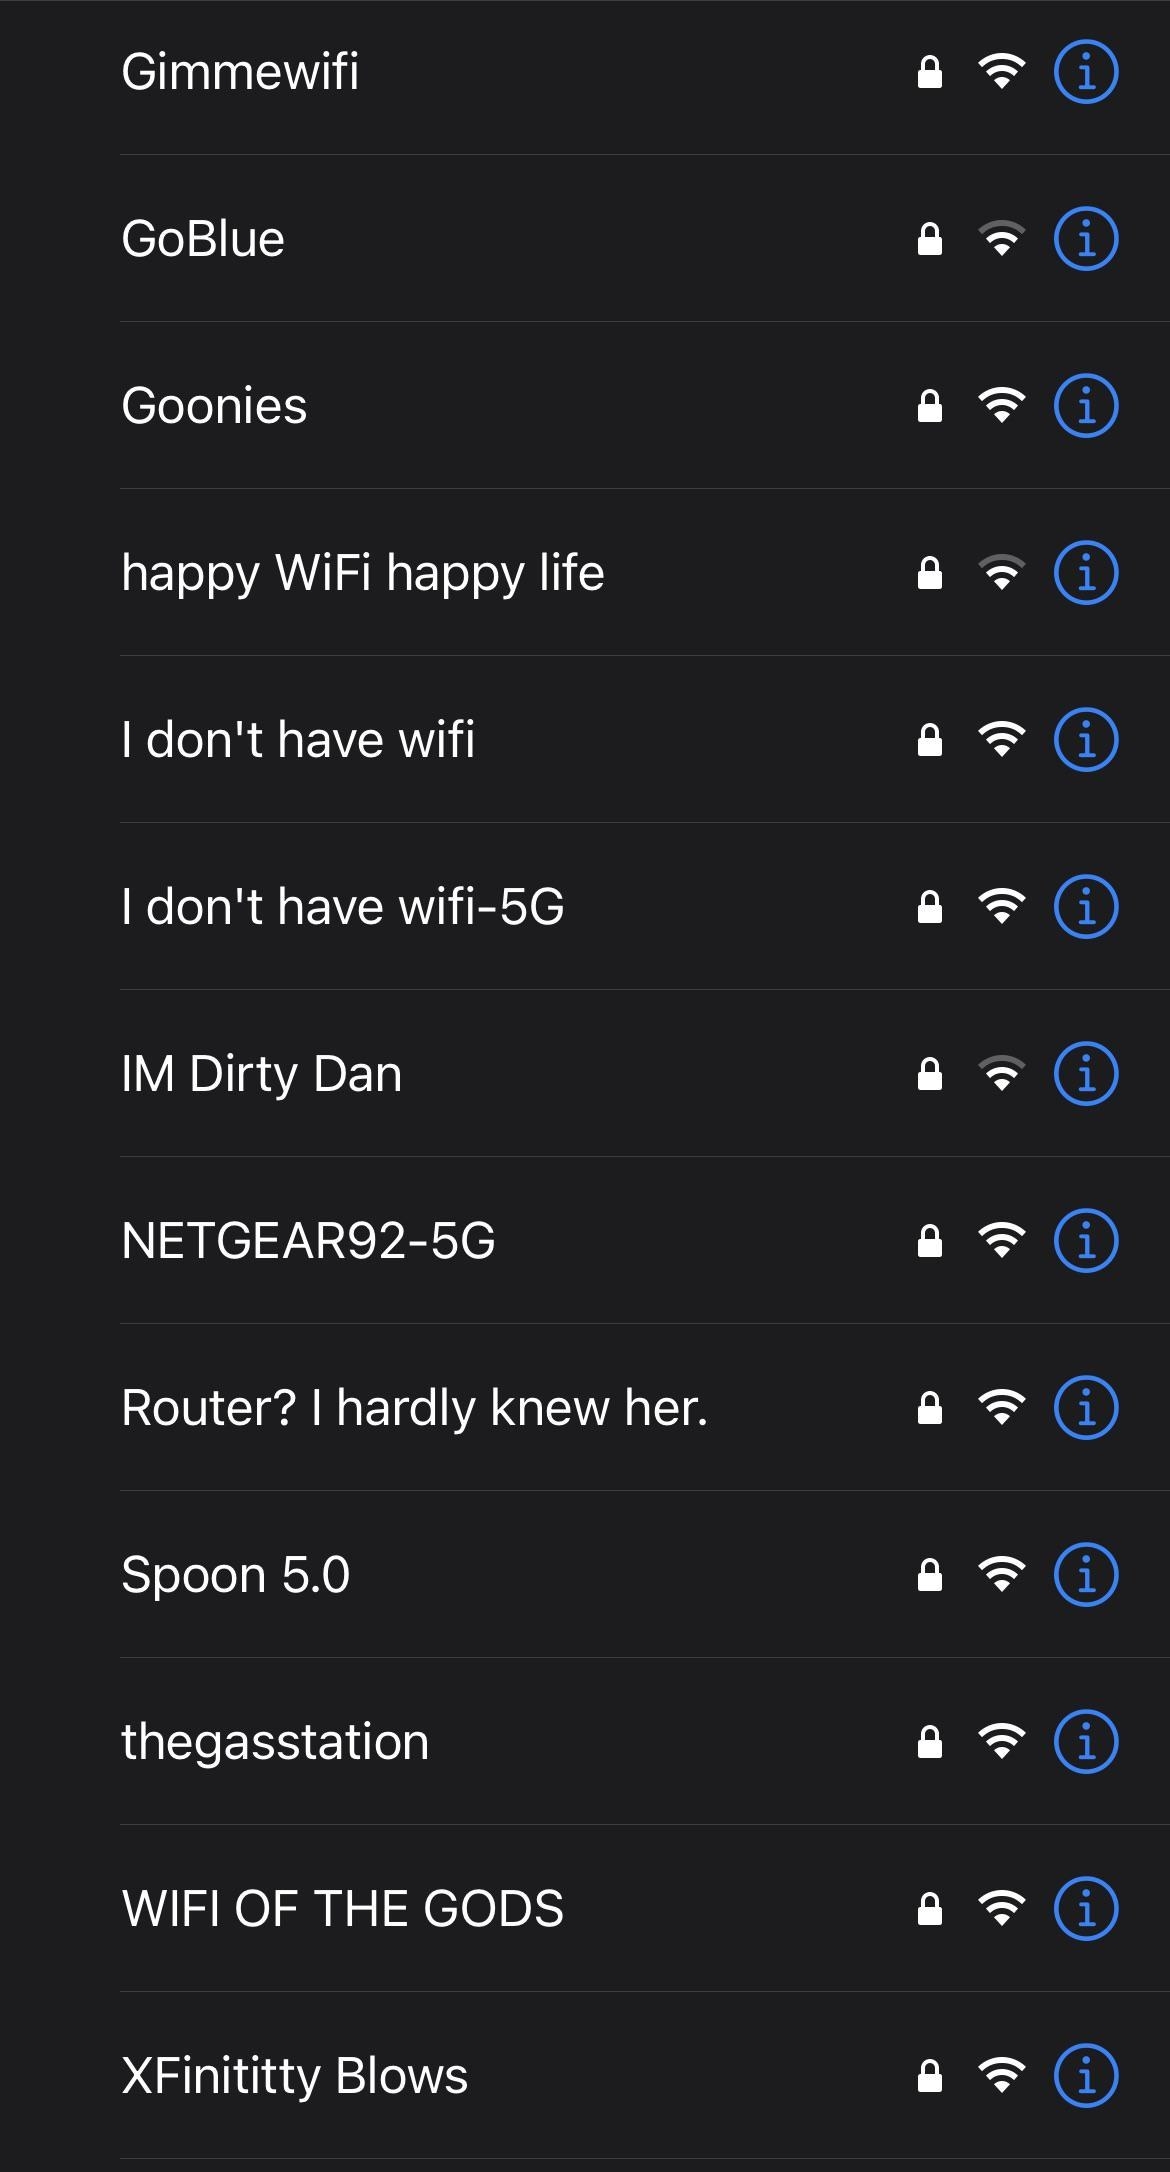 Screen shot of Wi-Fi names